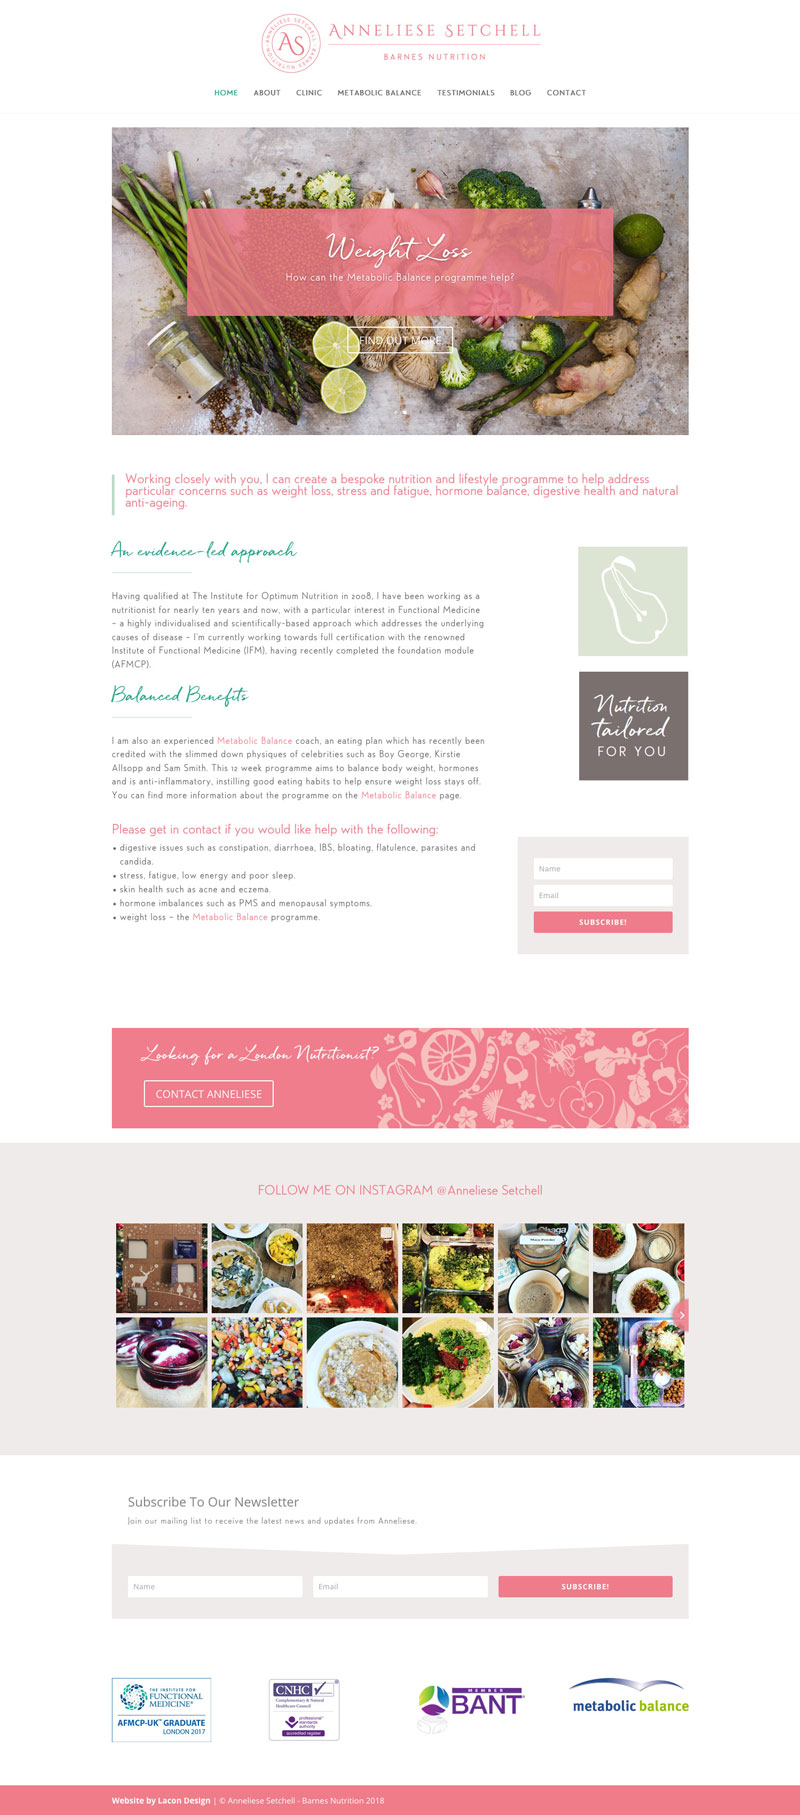 Anneliese Setchell Barnes Nutrition website design